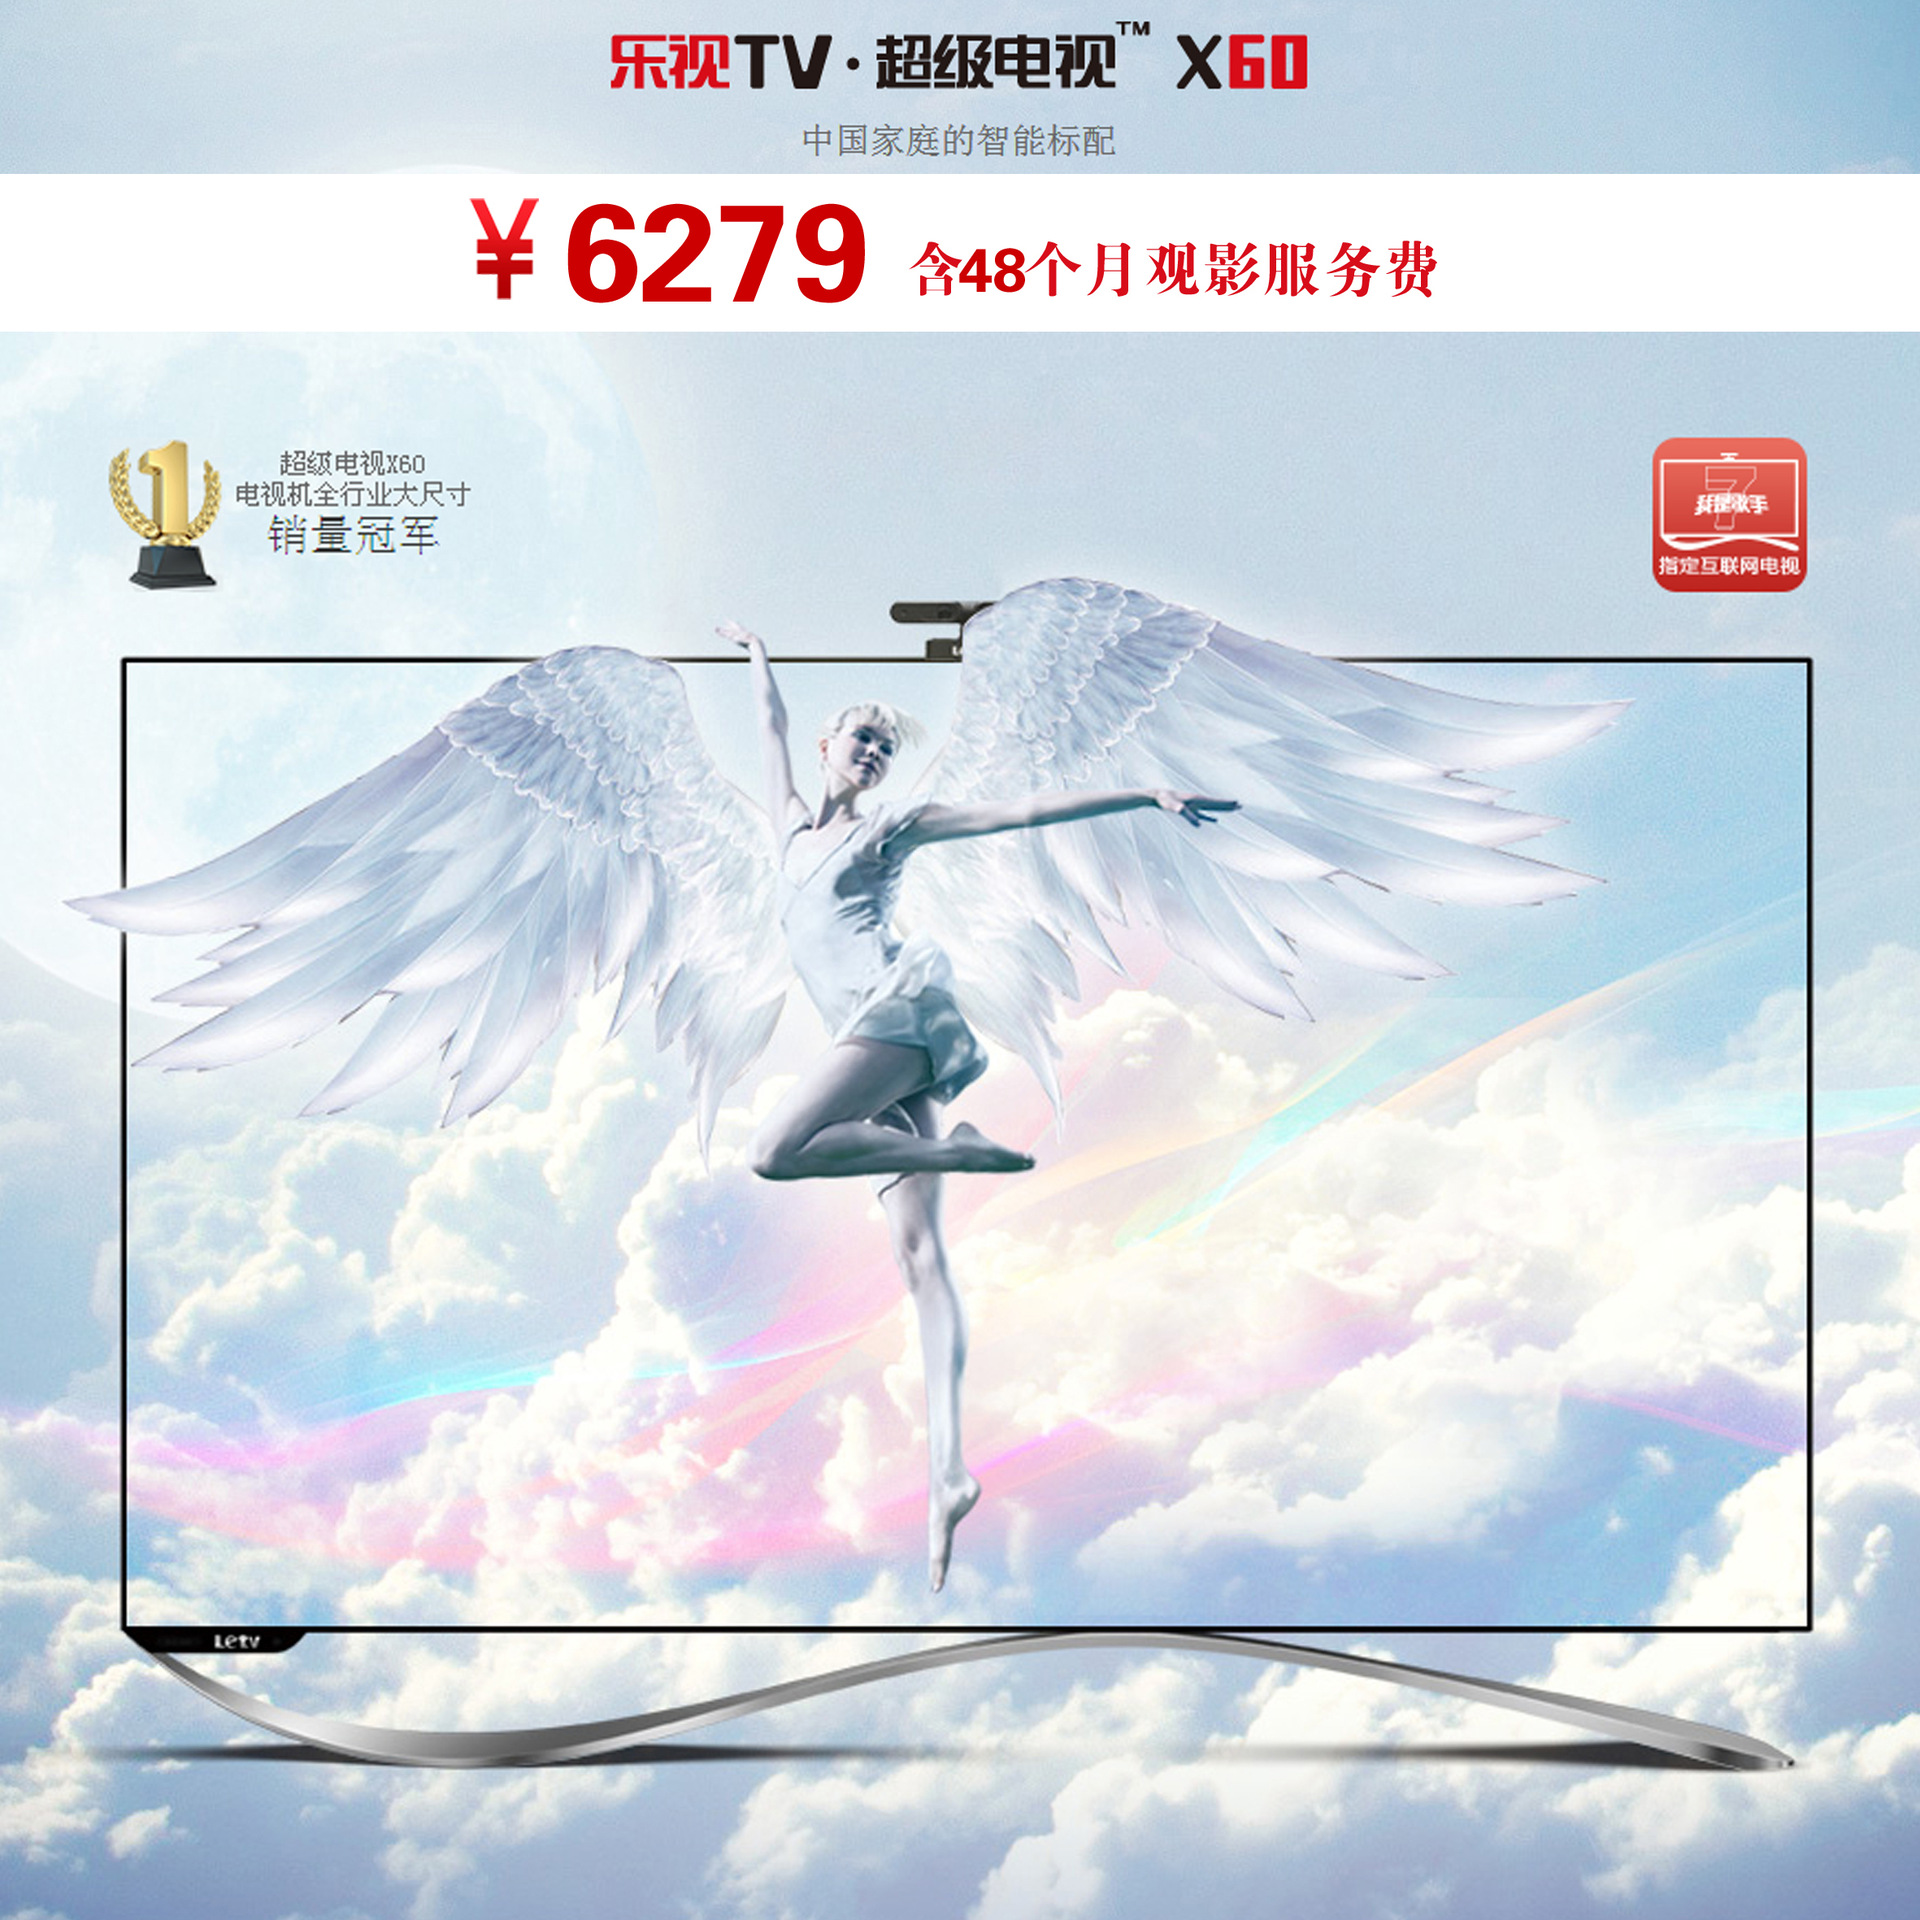 批发采购LED电视-乐视TV 超级电视X60 四核智